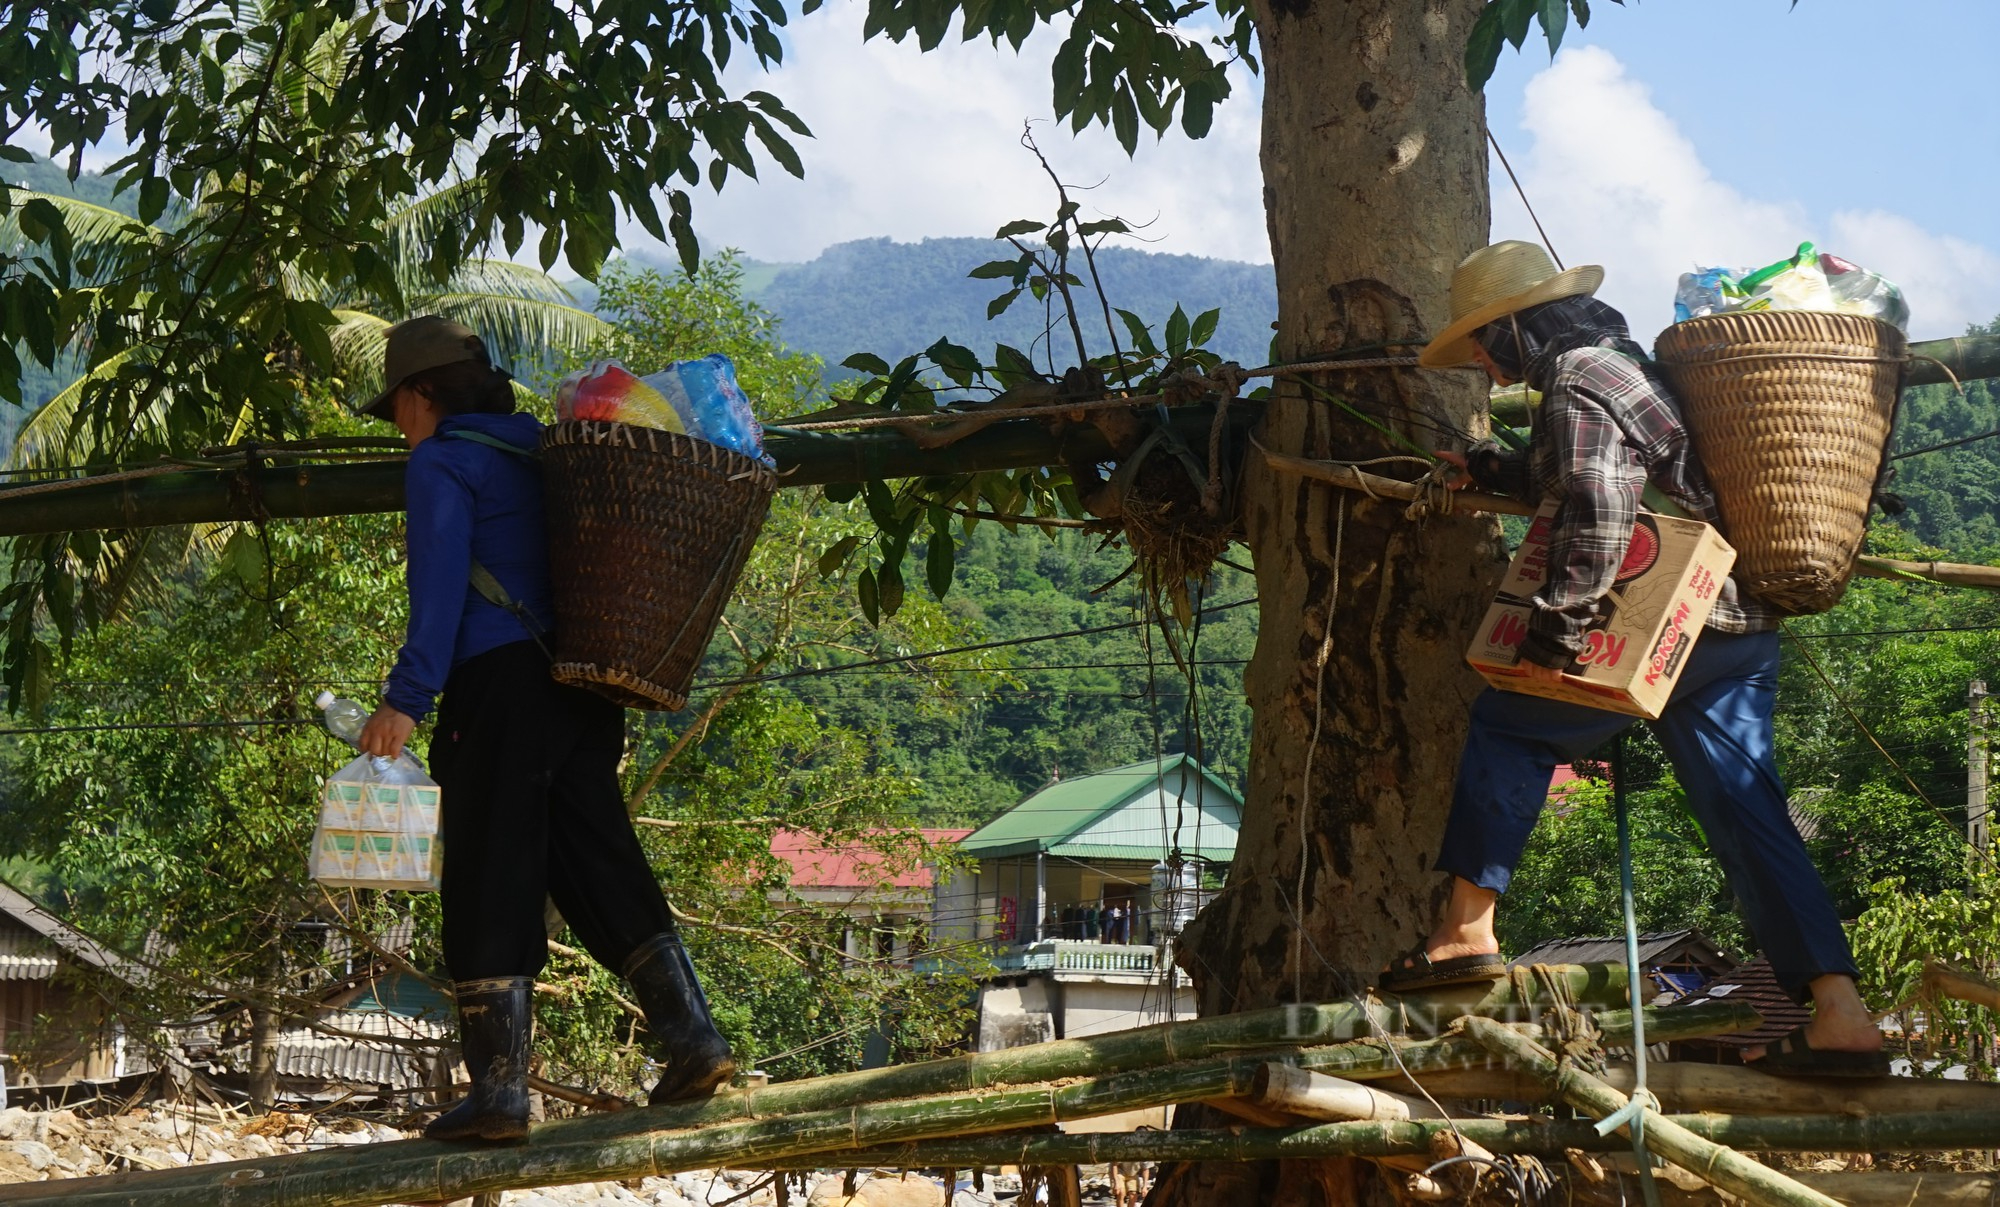 Lội bùn, mang nhu yếu phẩm chi viện cho dân vùng tâm lũ huyện Kỳ Sơn, Nghệ An - Ảnh 16.